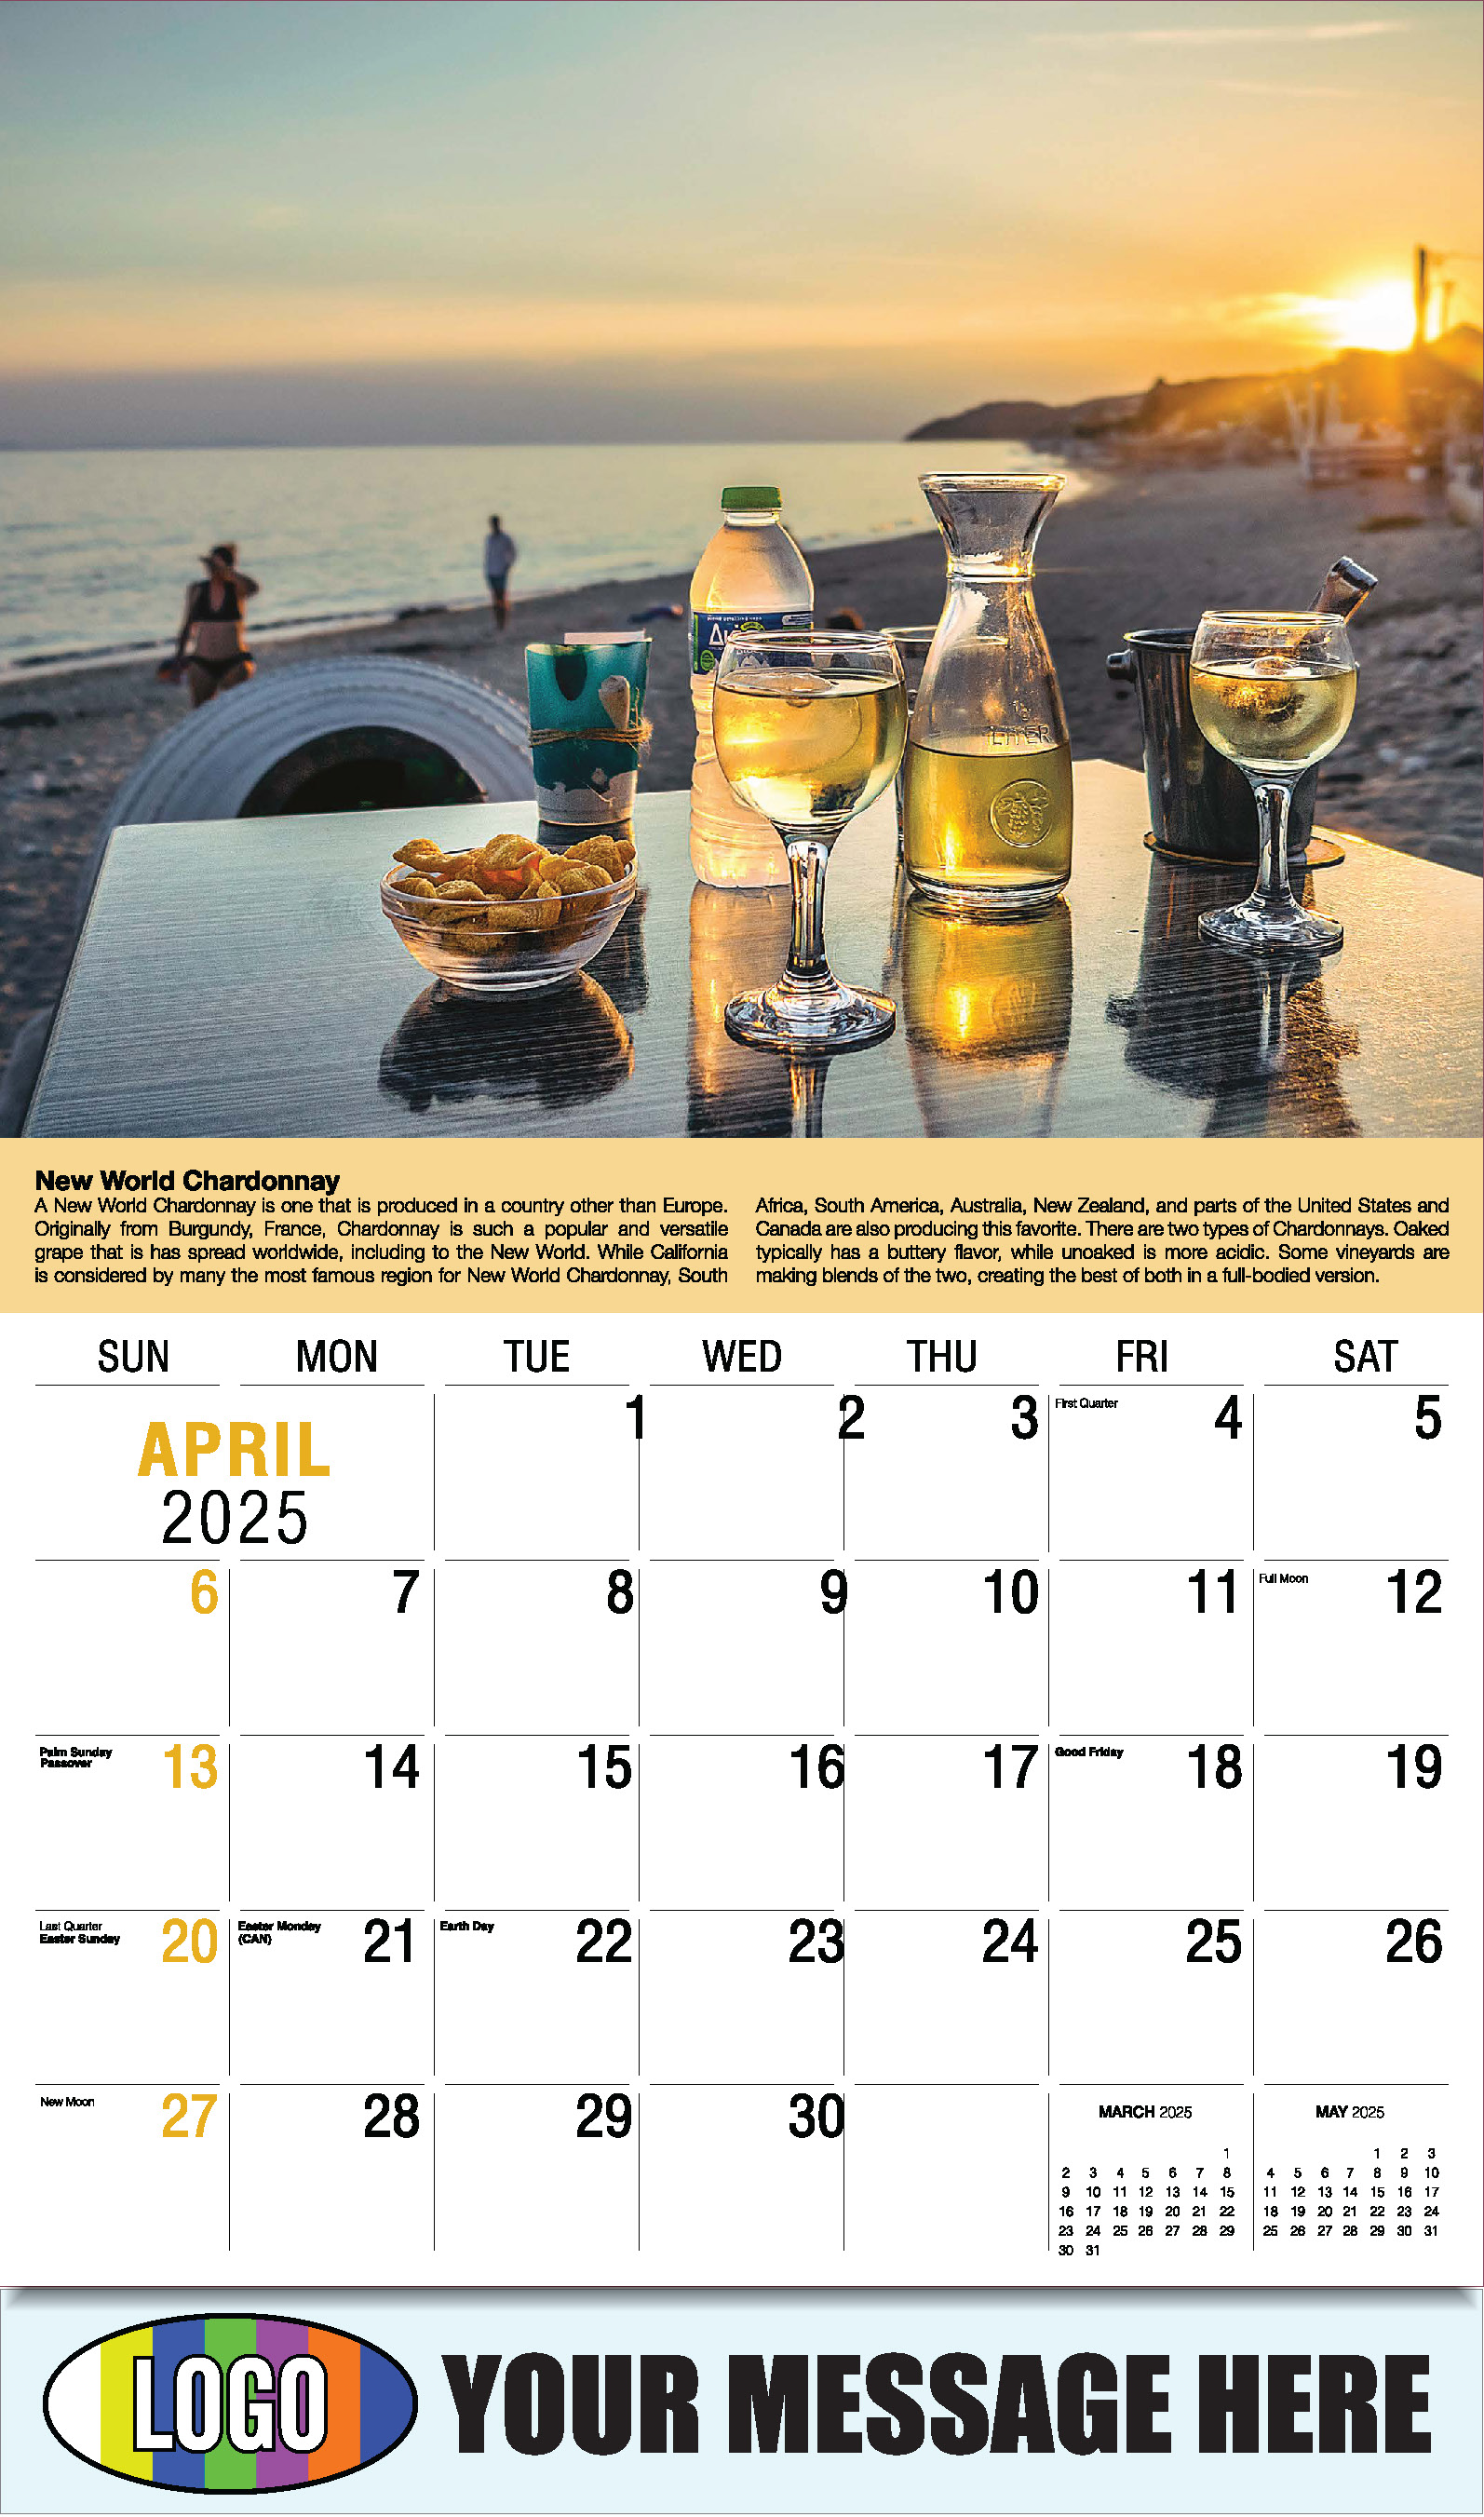 Vintages - Wine Tips 2025 Business Promo Calendar - April